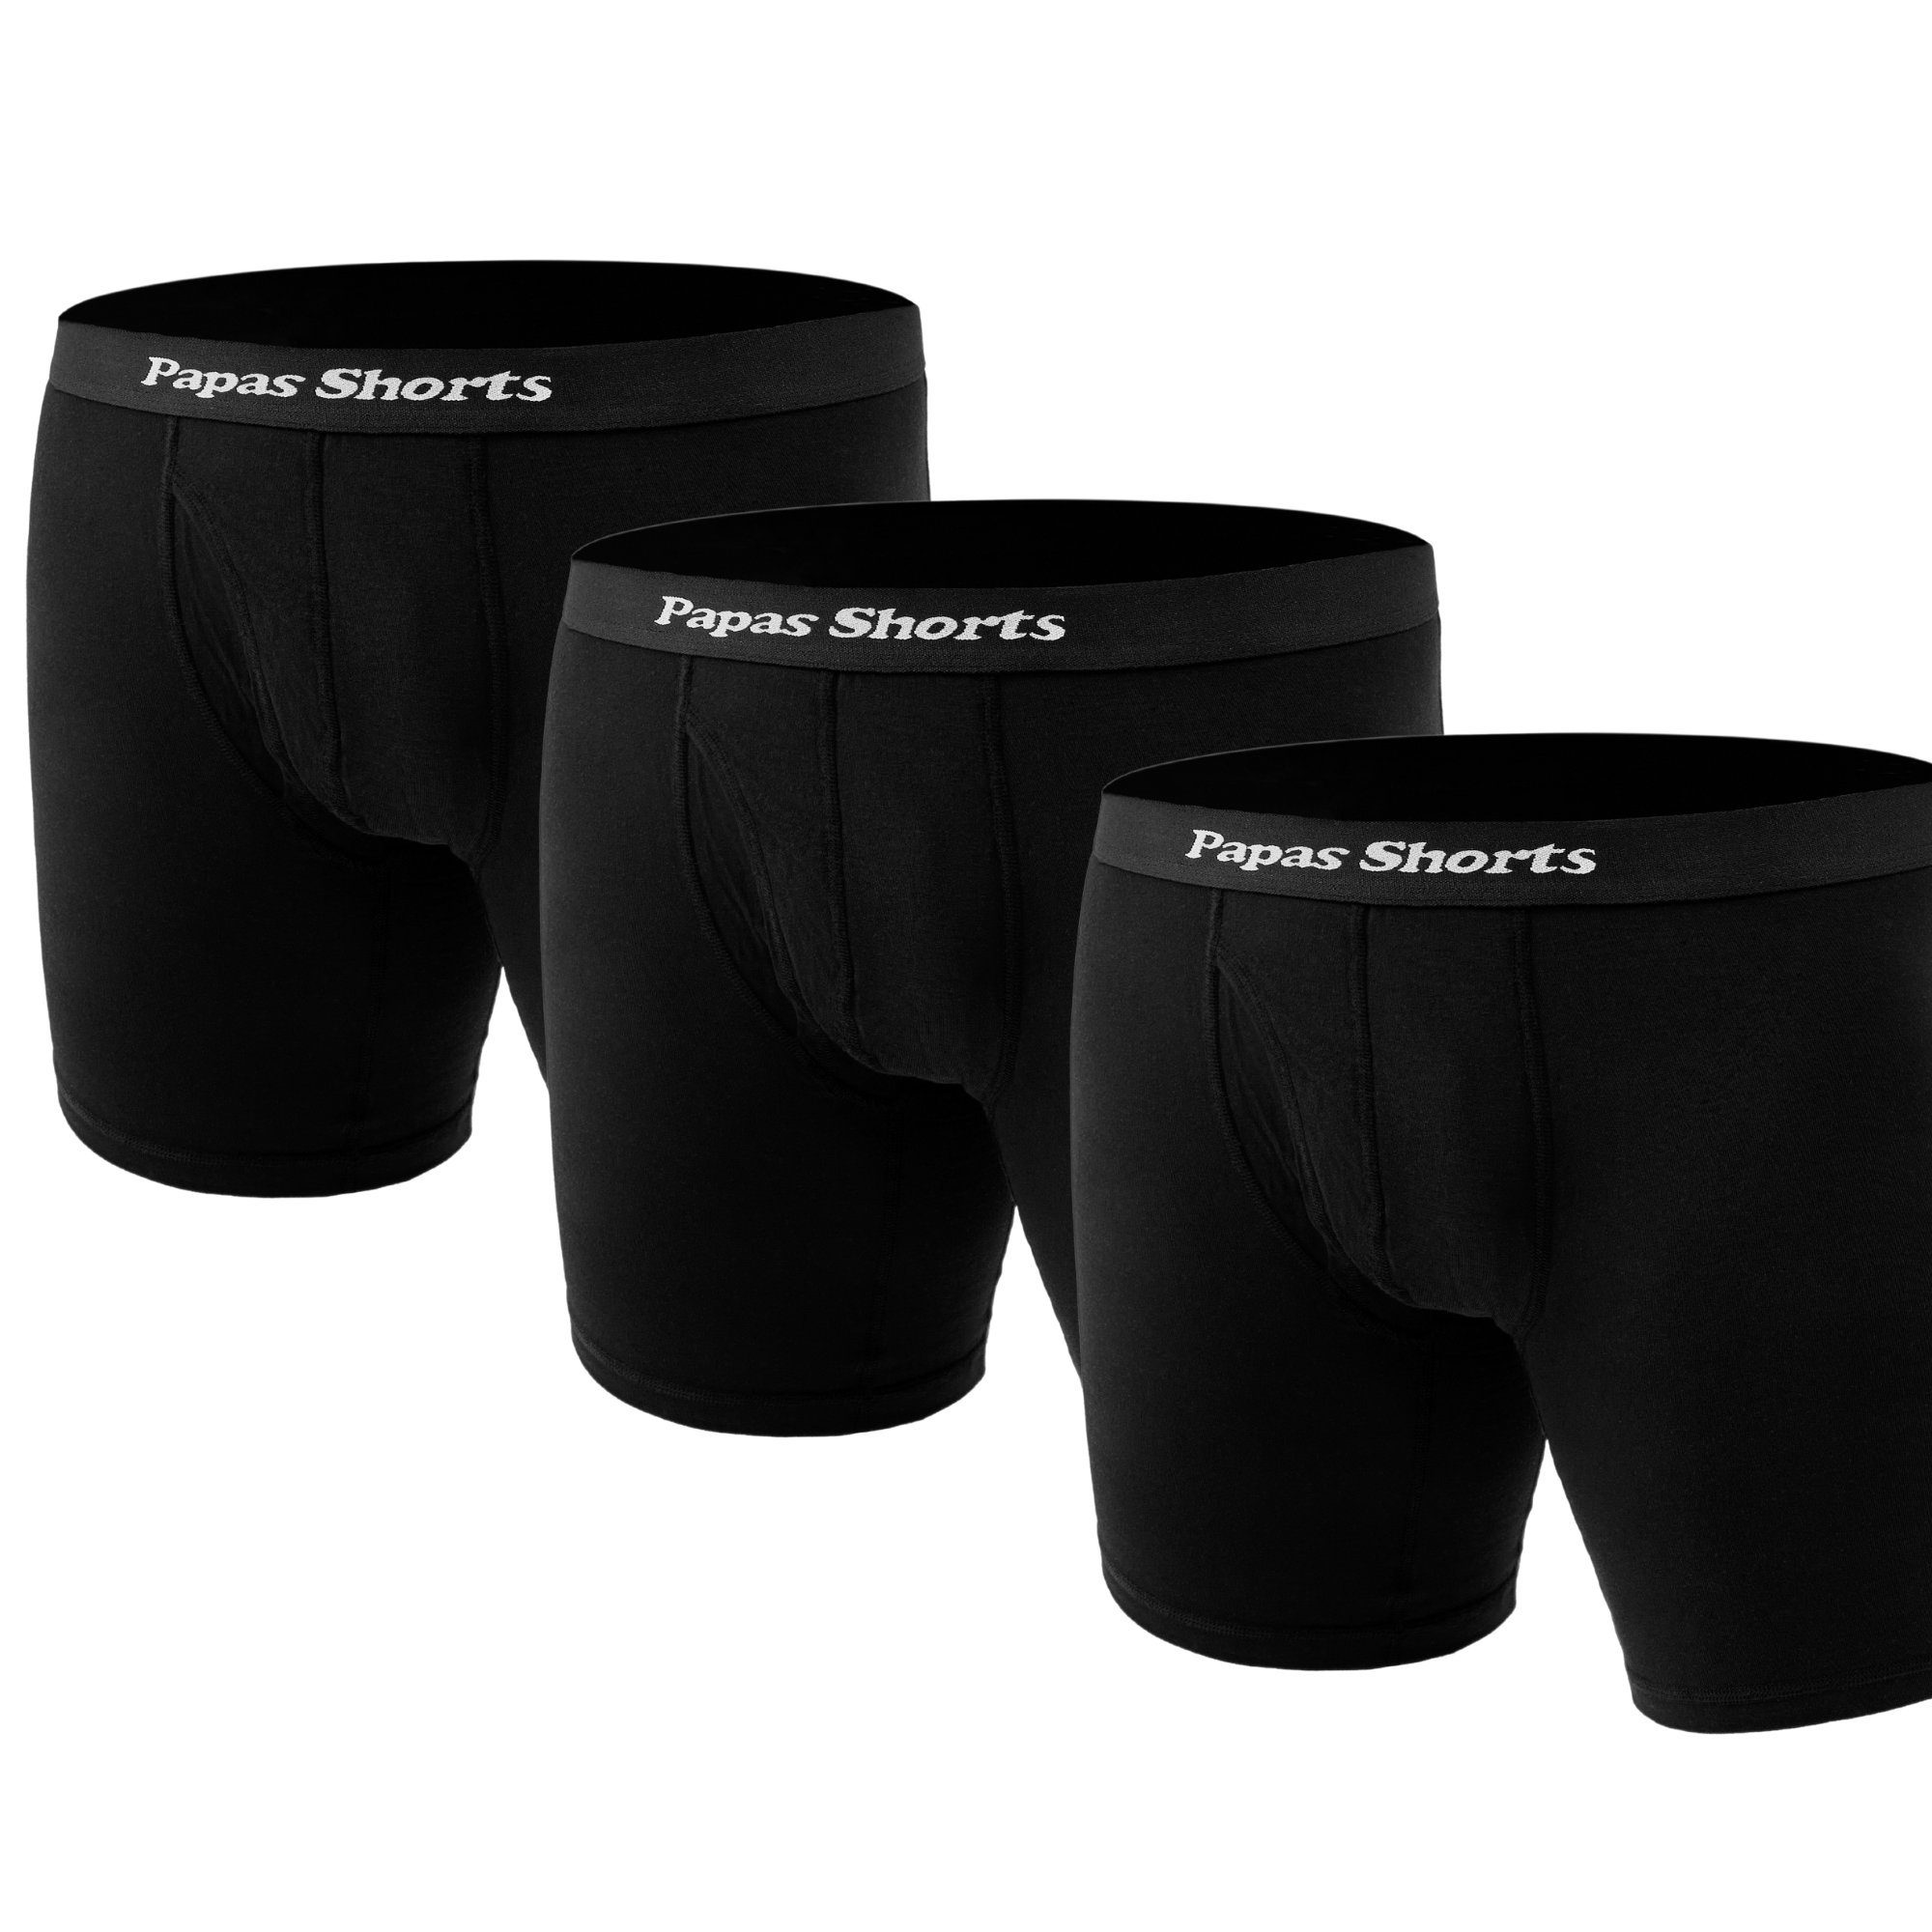 Papas gegen im Shorts Boxershorts Schwarze Buxe 3er-Pack) Schritt aus weichem Zwicken Beinlänge mit Modal extra (Packung,